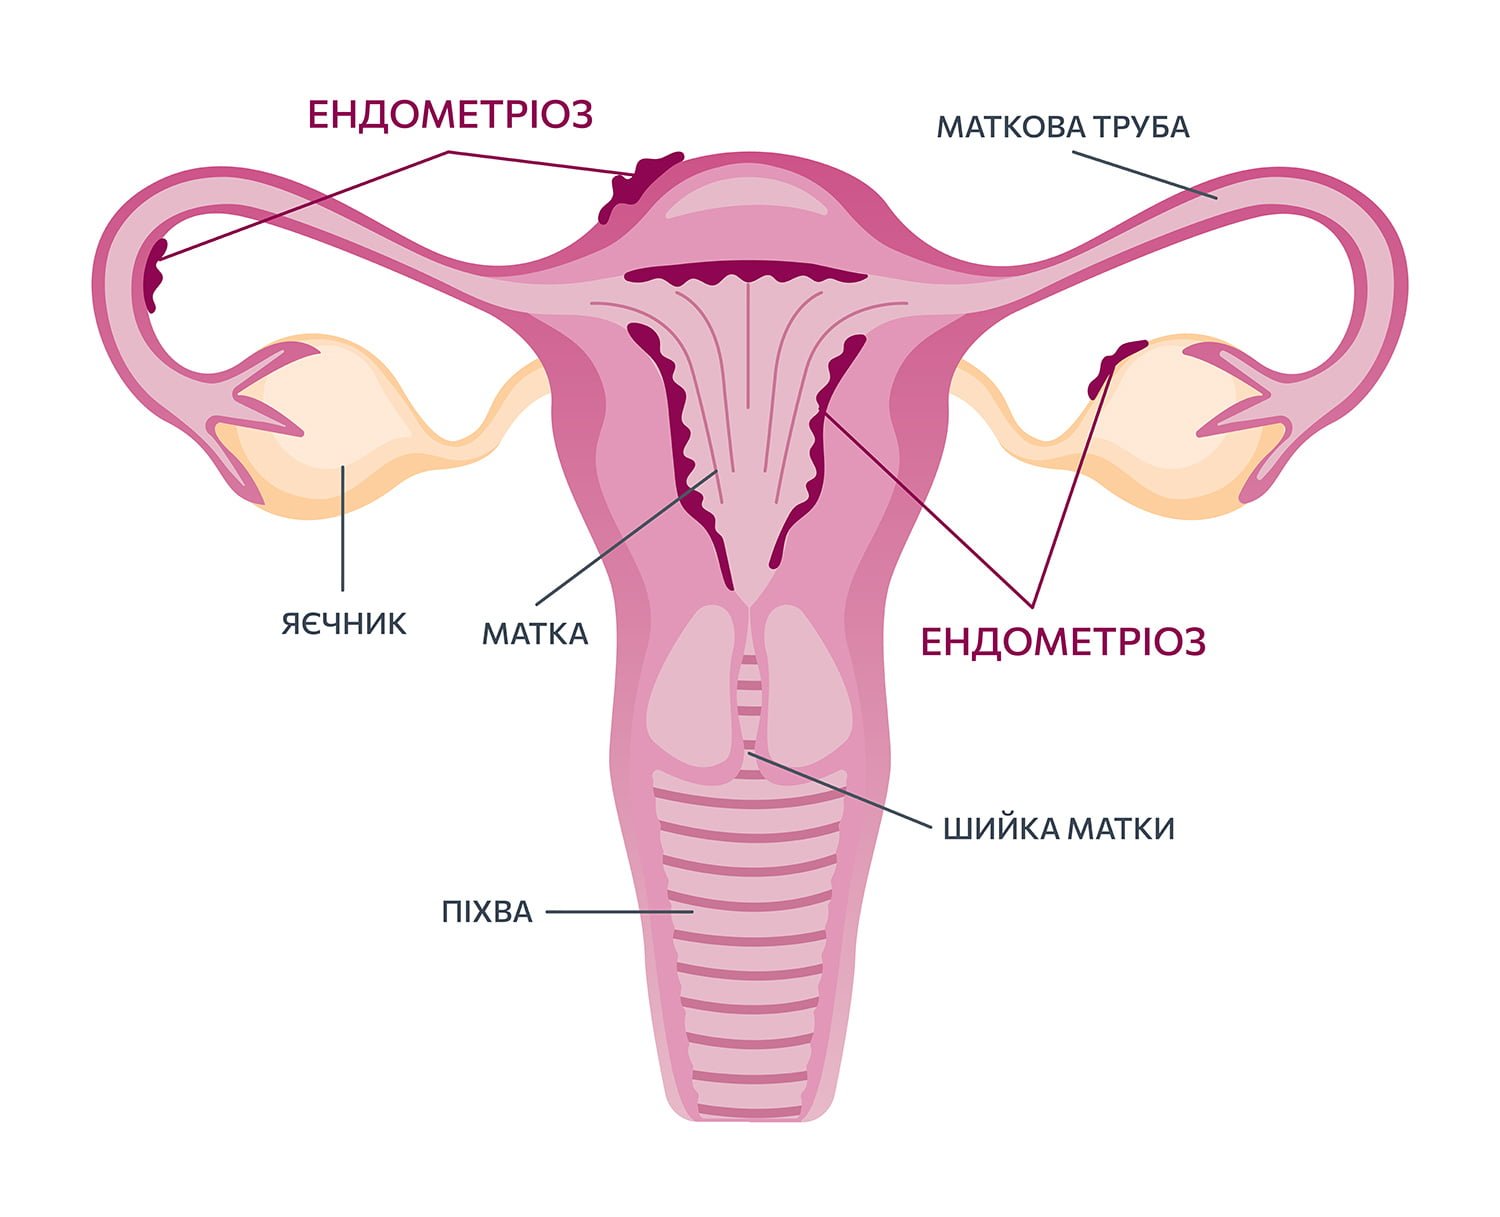 Endometrioz 2 01